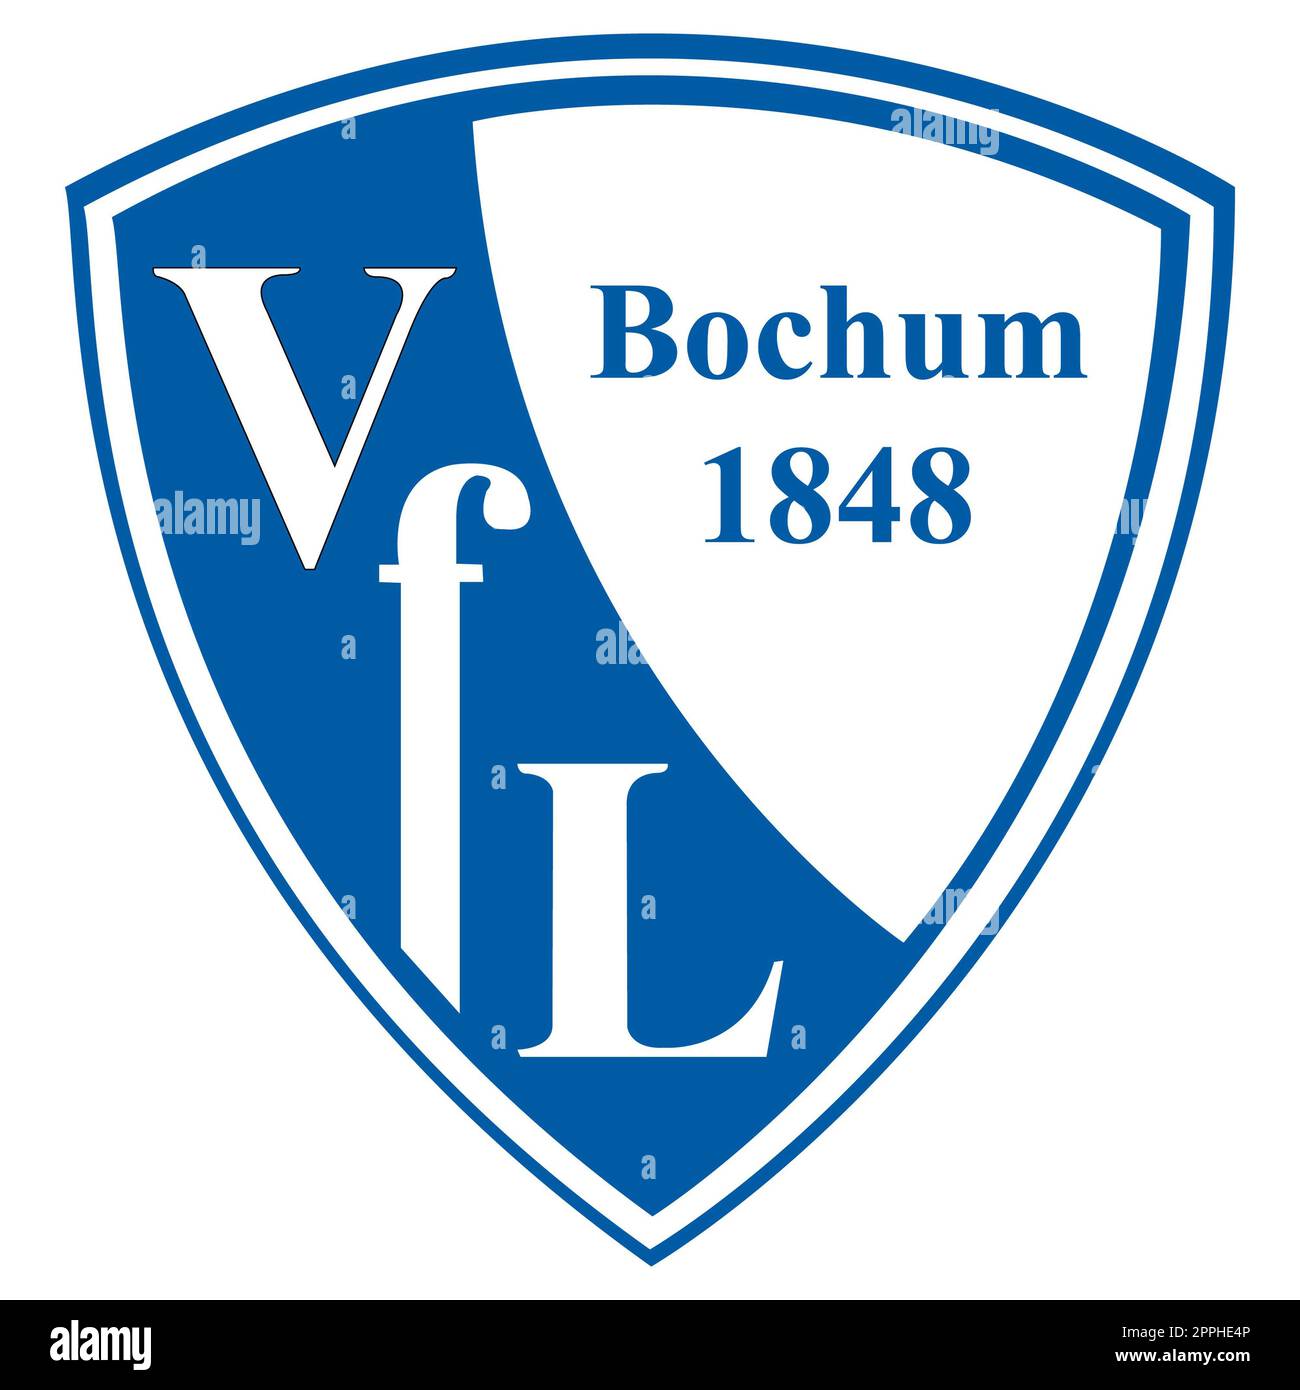 Francoforte sul meno, Germania - 10.23.2022 il logo della squadra di calcio tedesca Bochum. Immagine vettoriale. Foto Stock